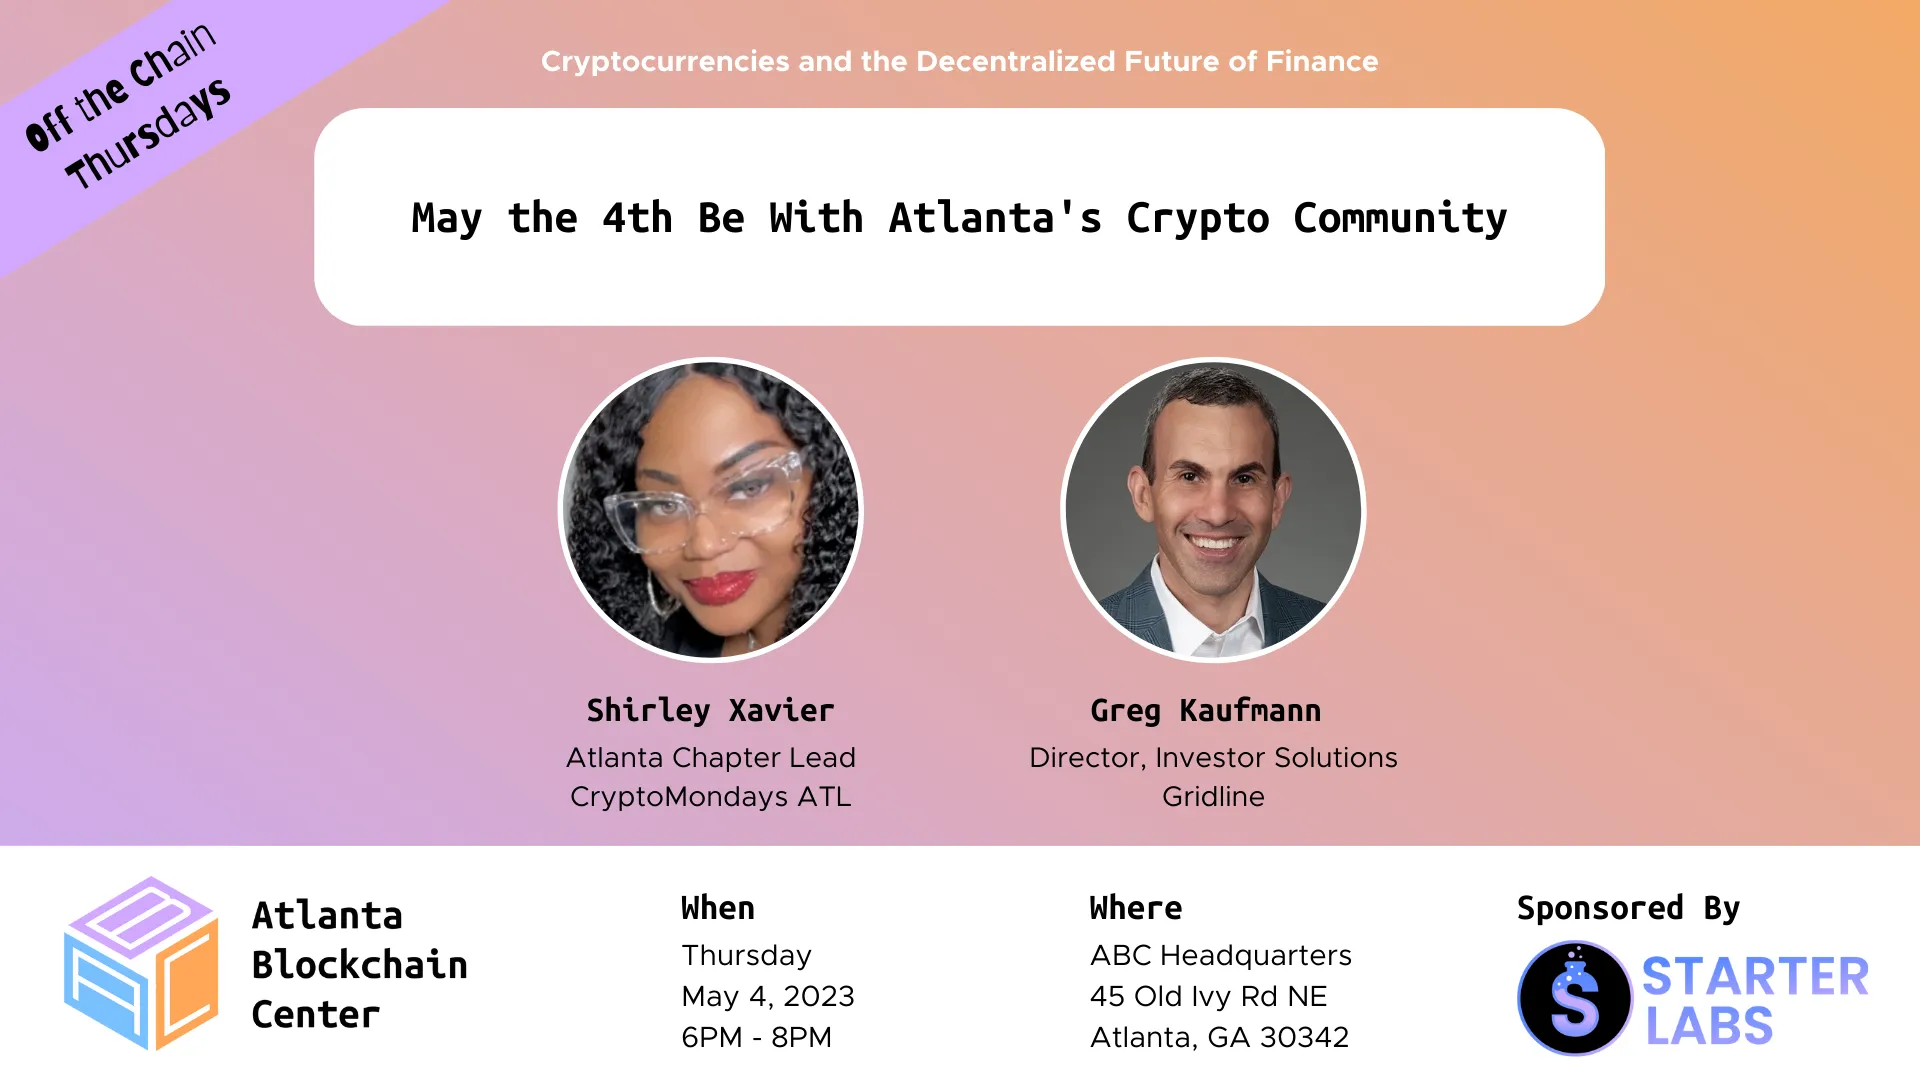 May the 4th Be With Atlanta’s Crypto Community